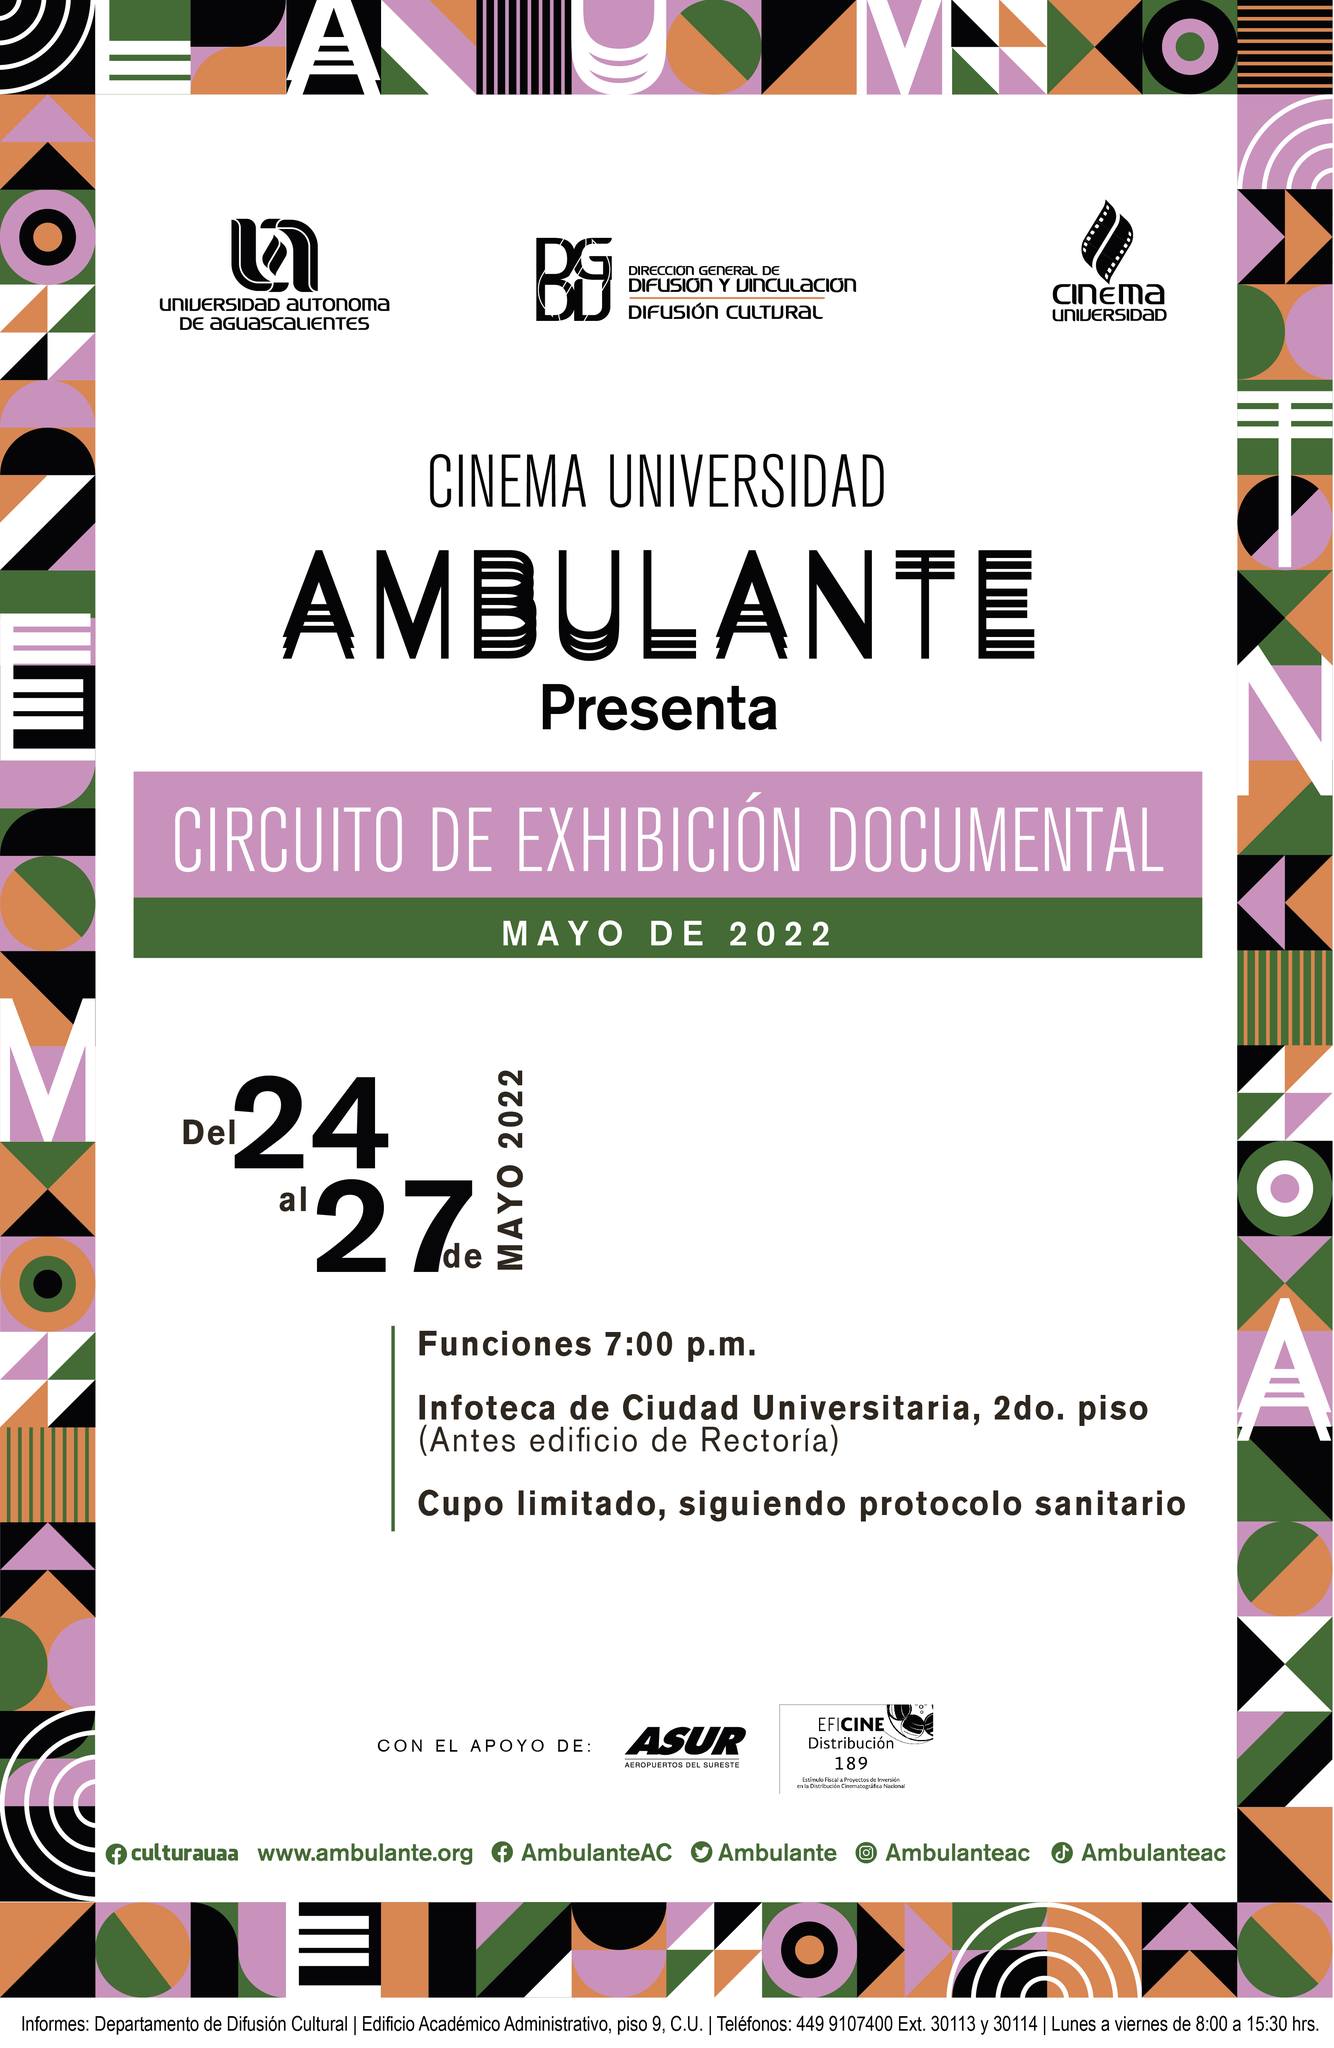 Proyectará UAA circuito de exhibición documental de “Ambulante Presenta”